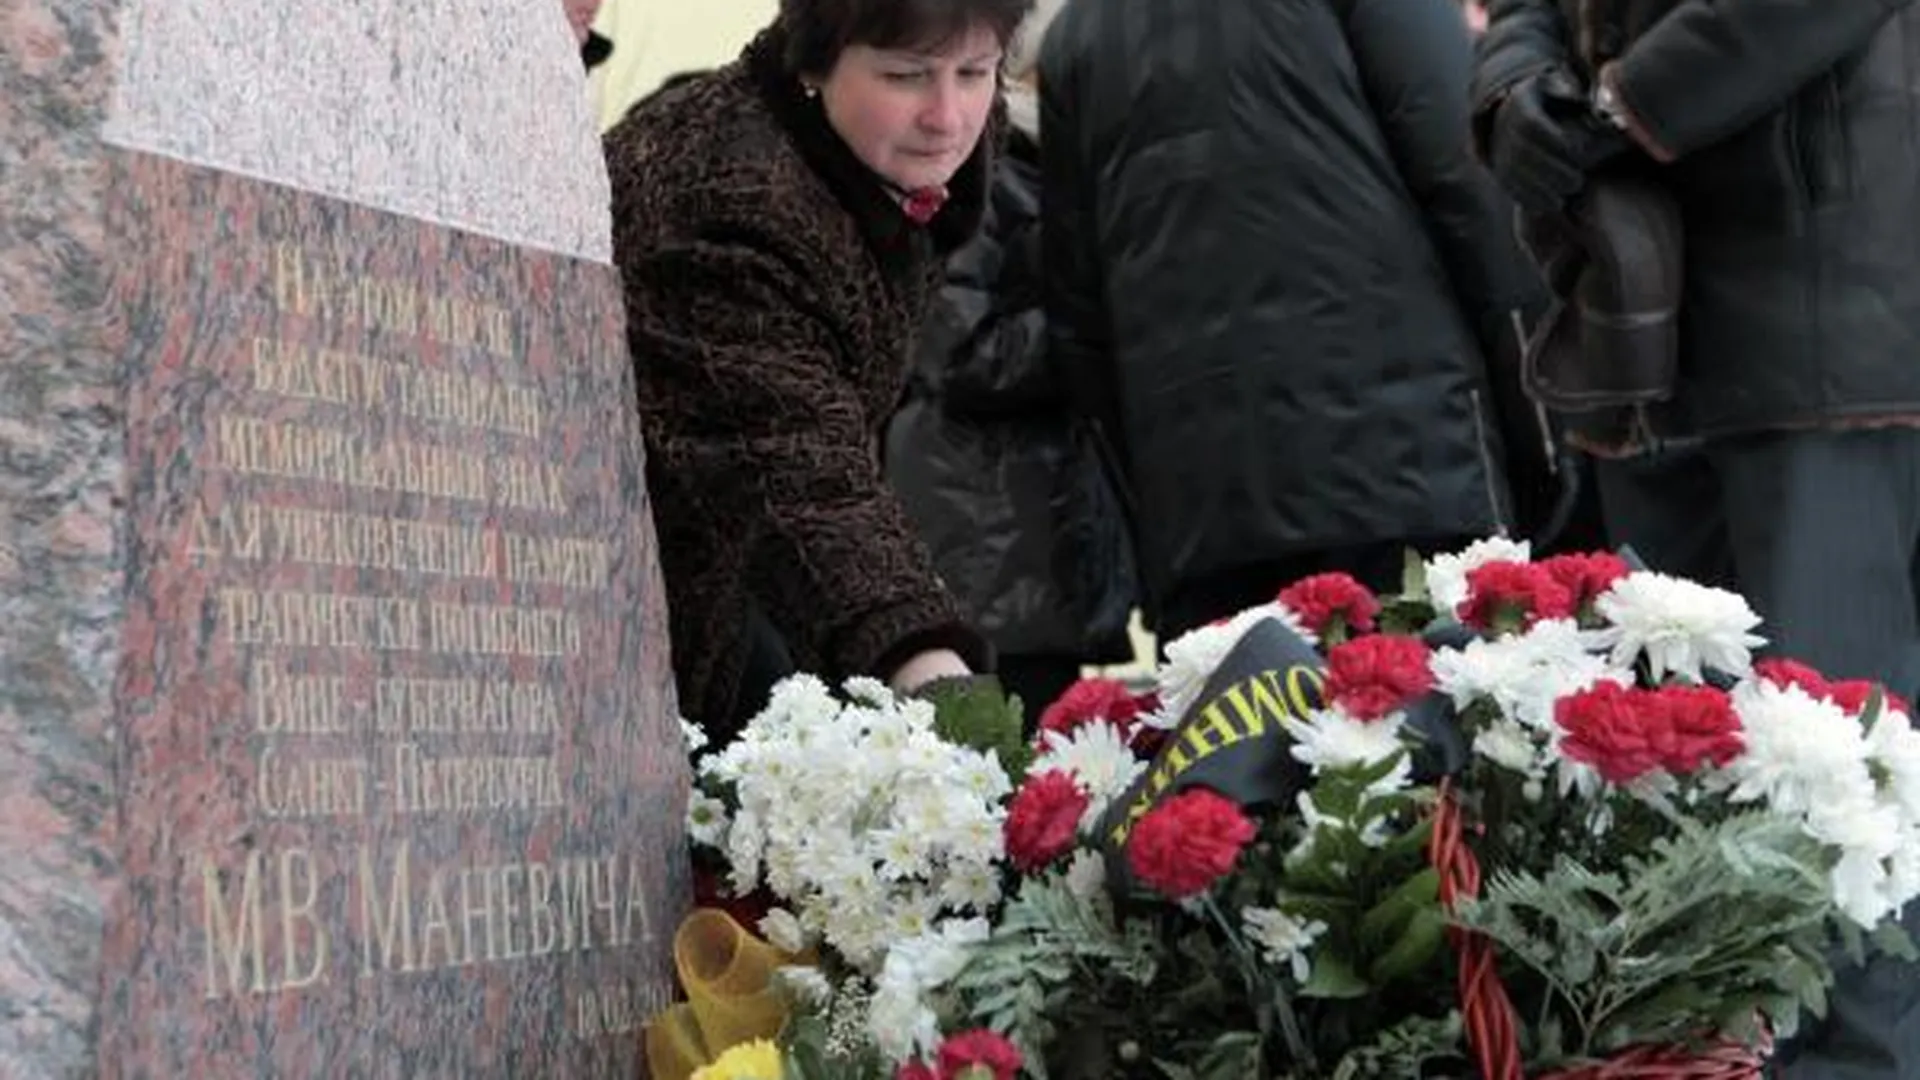 Раскрыто убийство вице-губернатора Санкт-Петербурга Михаила Маневича